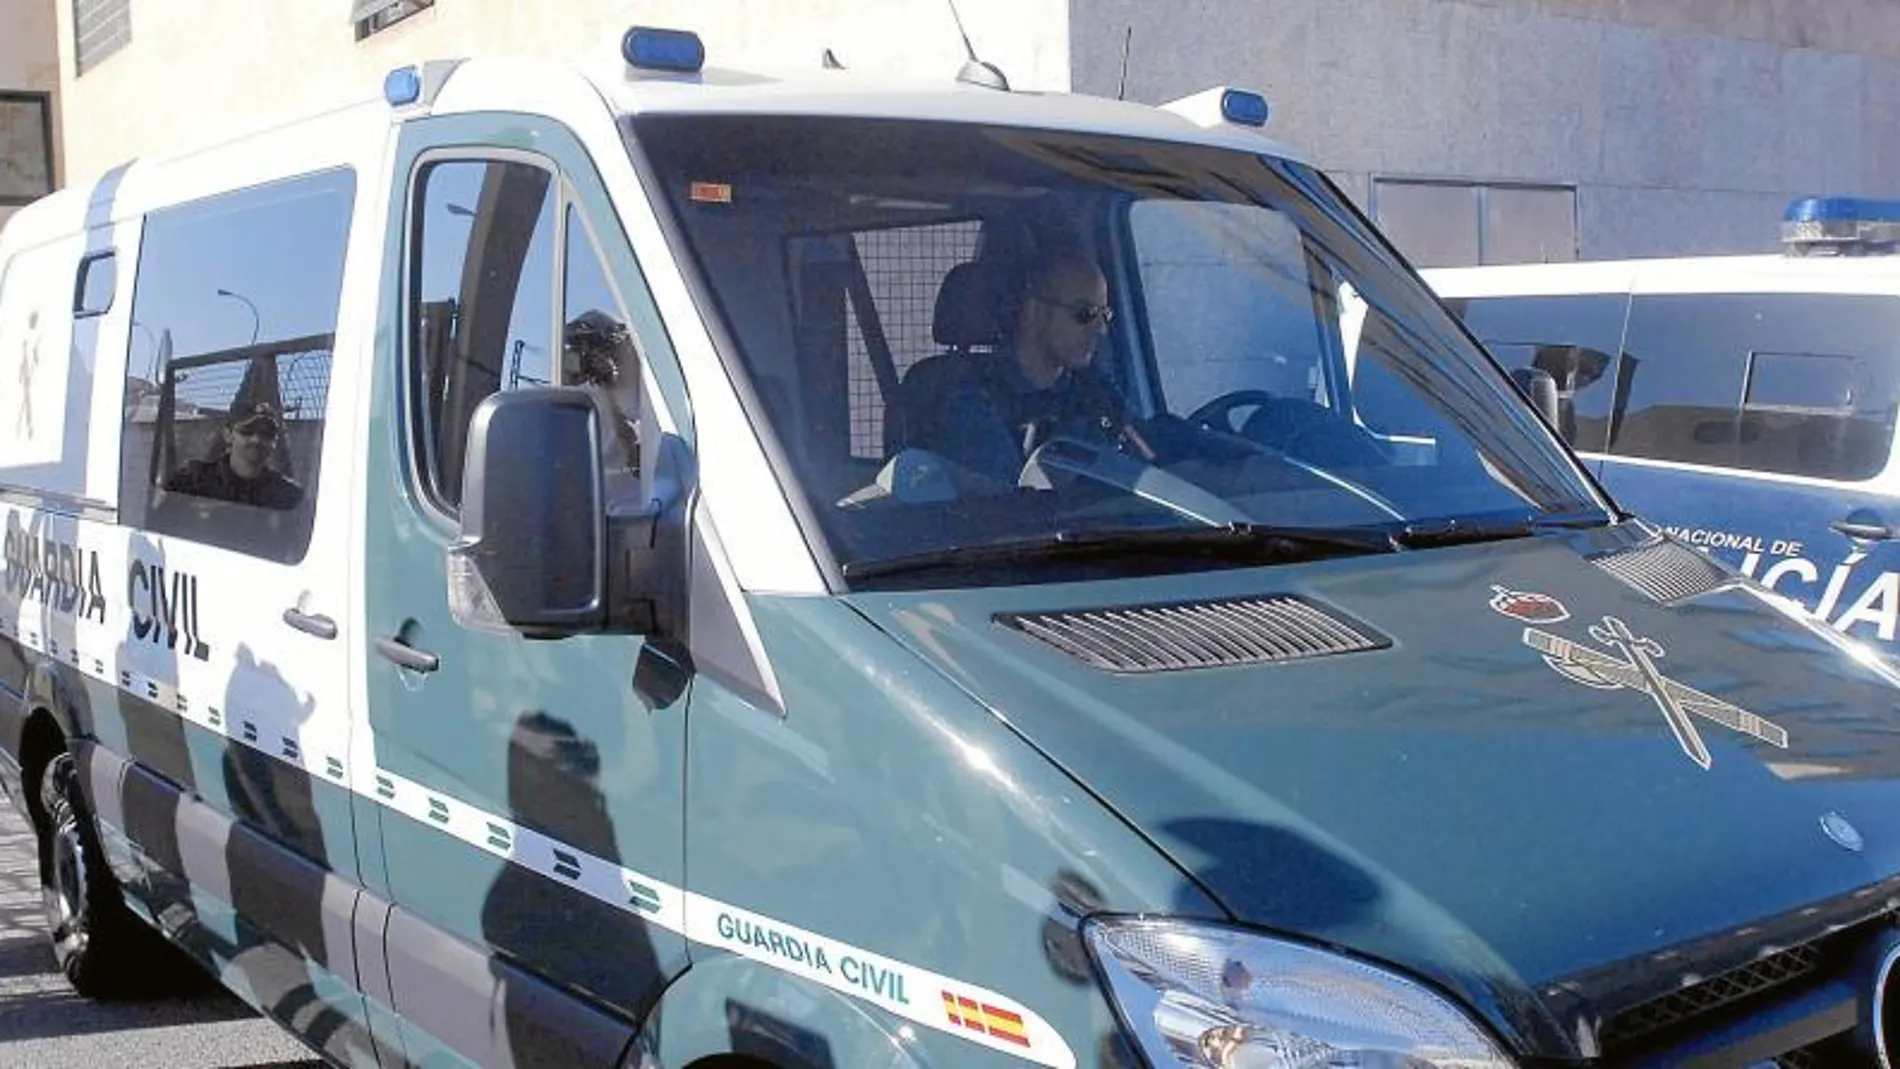 La policia local Raquel Gago, de 41 años, imputada por la muerte de la presidenta de la Diputación de León, Isabel Carrasco, sale del juzgado en un furgón de la Guardia Civil para ingresar en la cárcel de Mansilla de las Mulas.